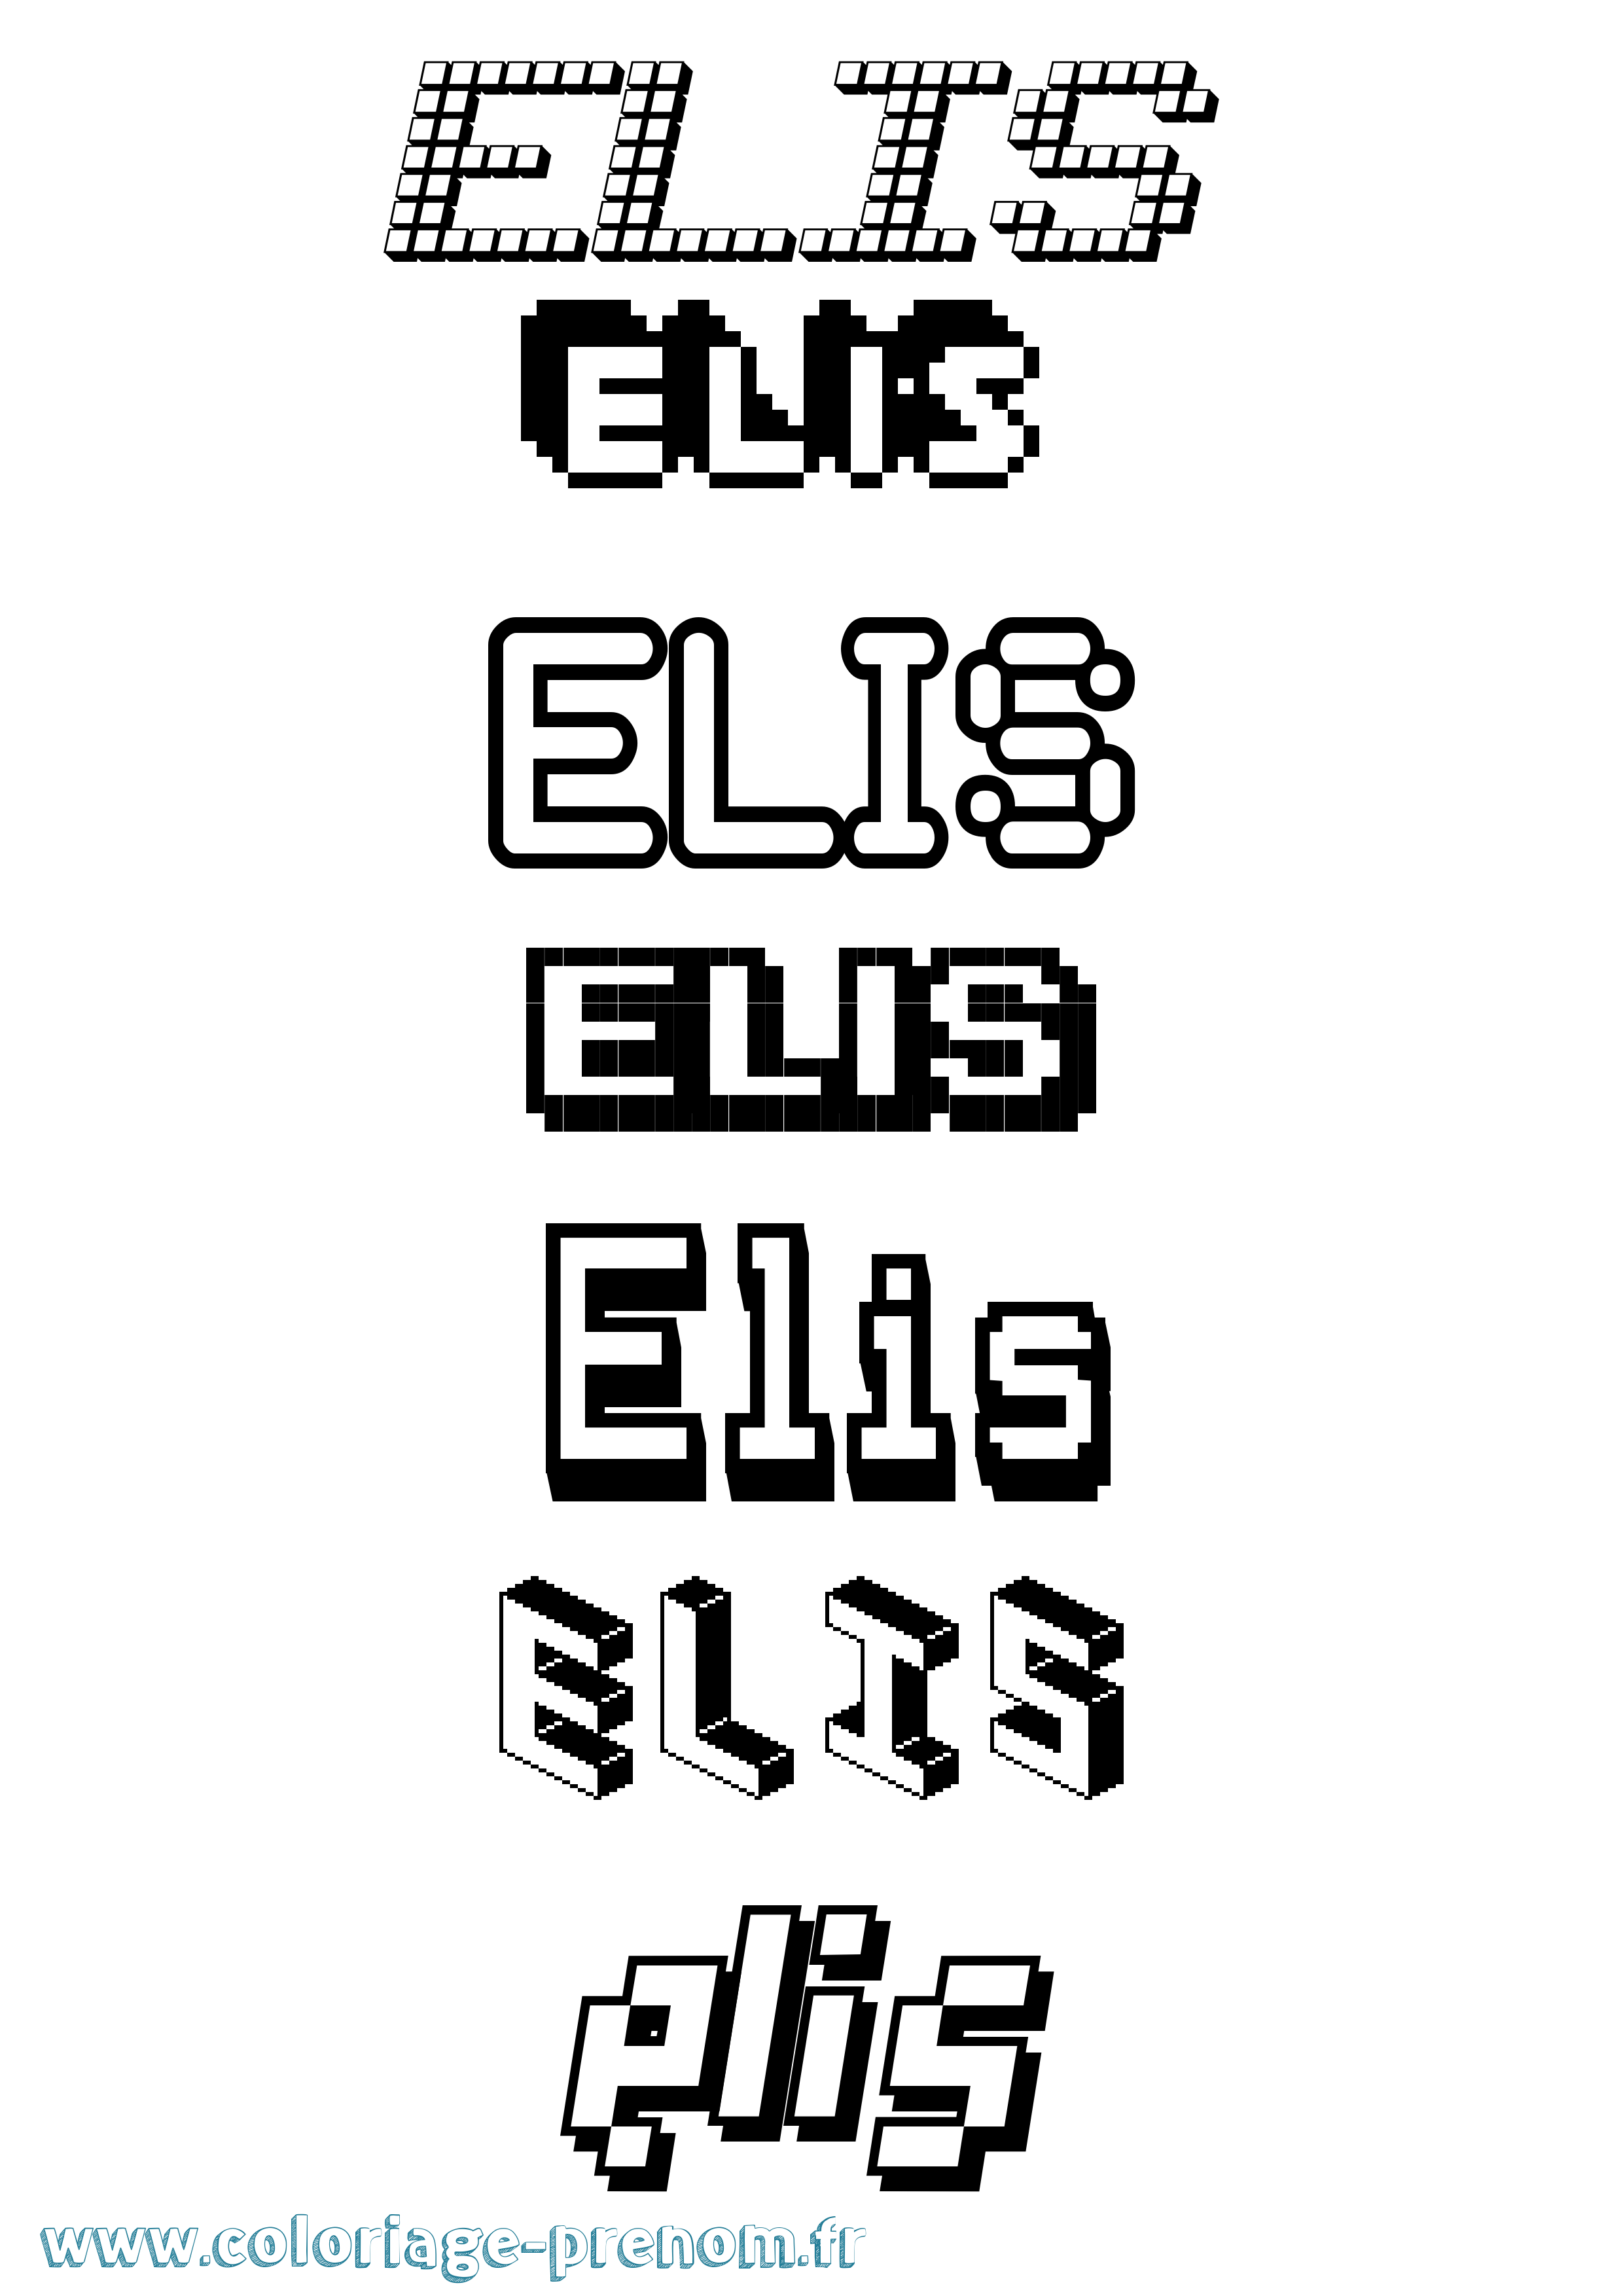 Coloriage prénom Elis Pixel